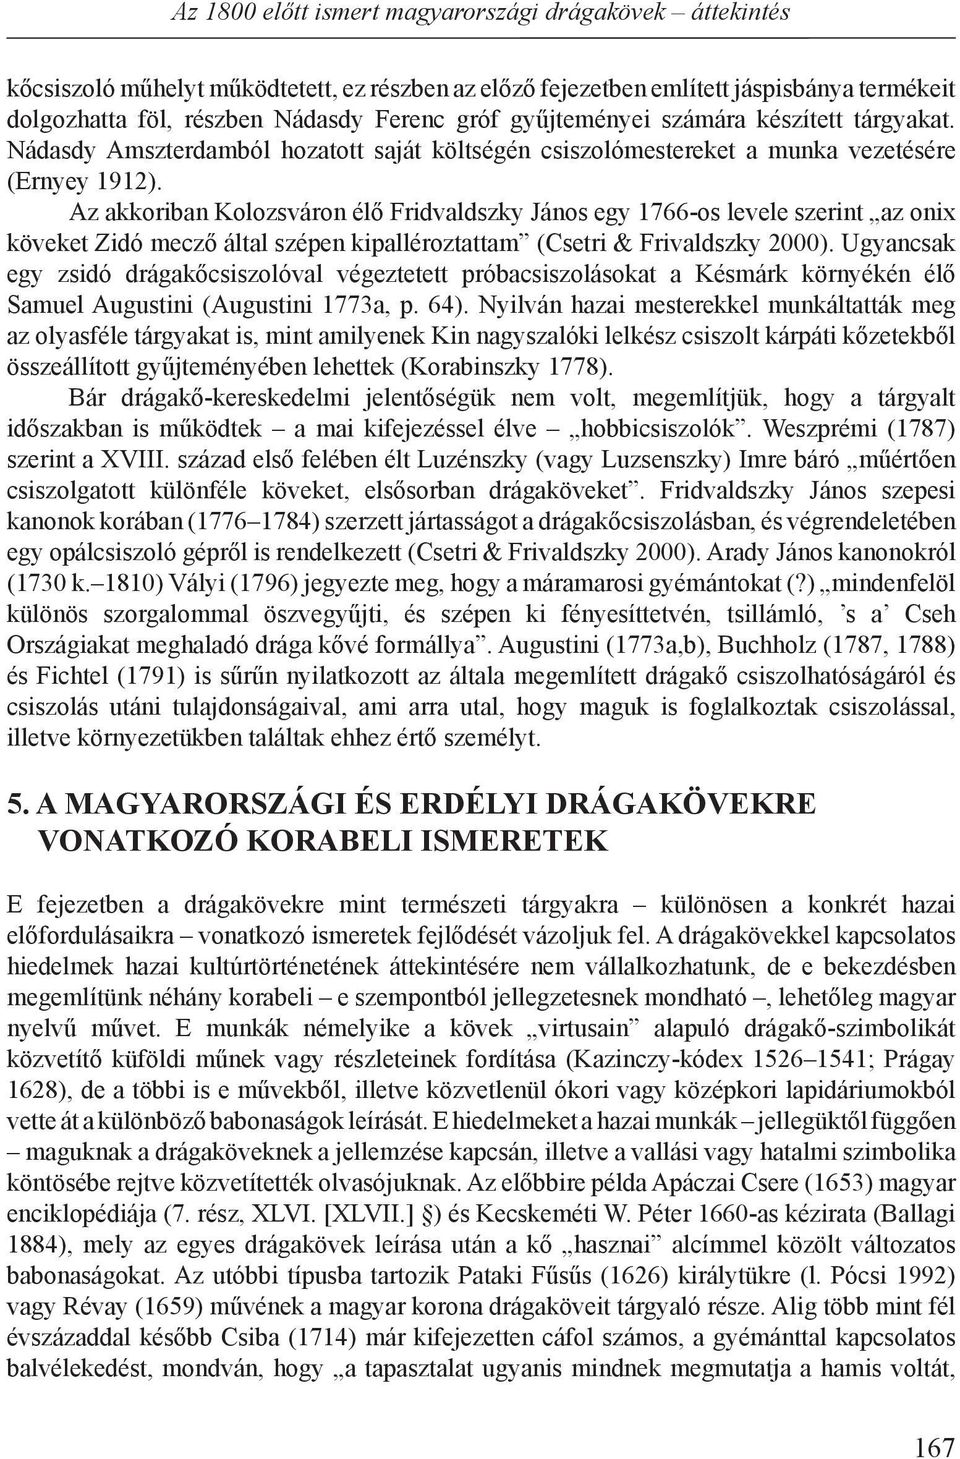 Az akkoriban Kolozsváron élő Fridvaldszky János egy 1766-os levele szerint az onix köveket Zidó mecző által szépen kipalléroztattam (Csetri & Frivaldszky 2000).